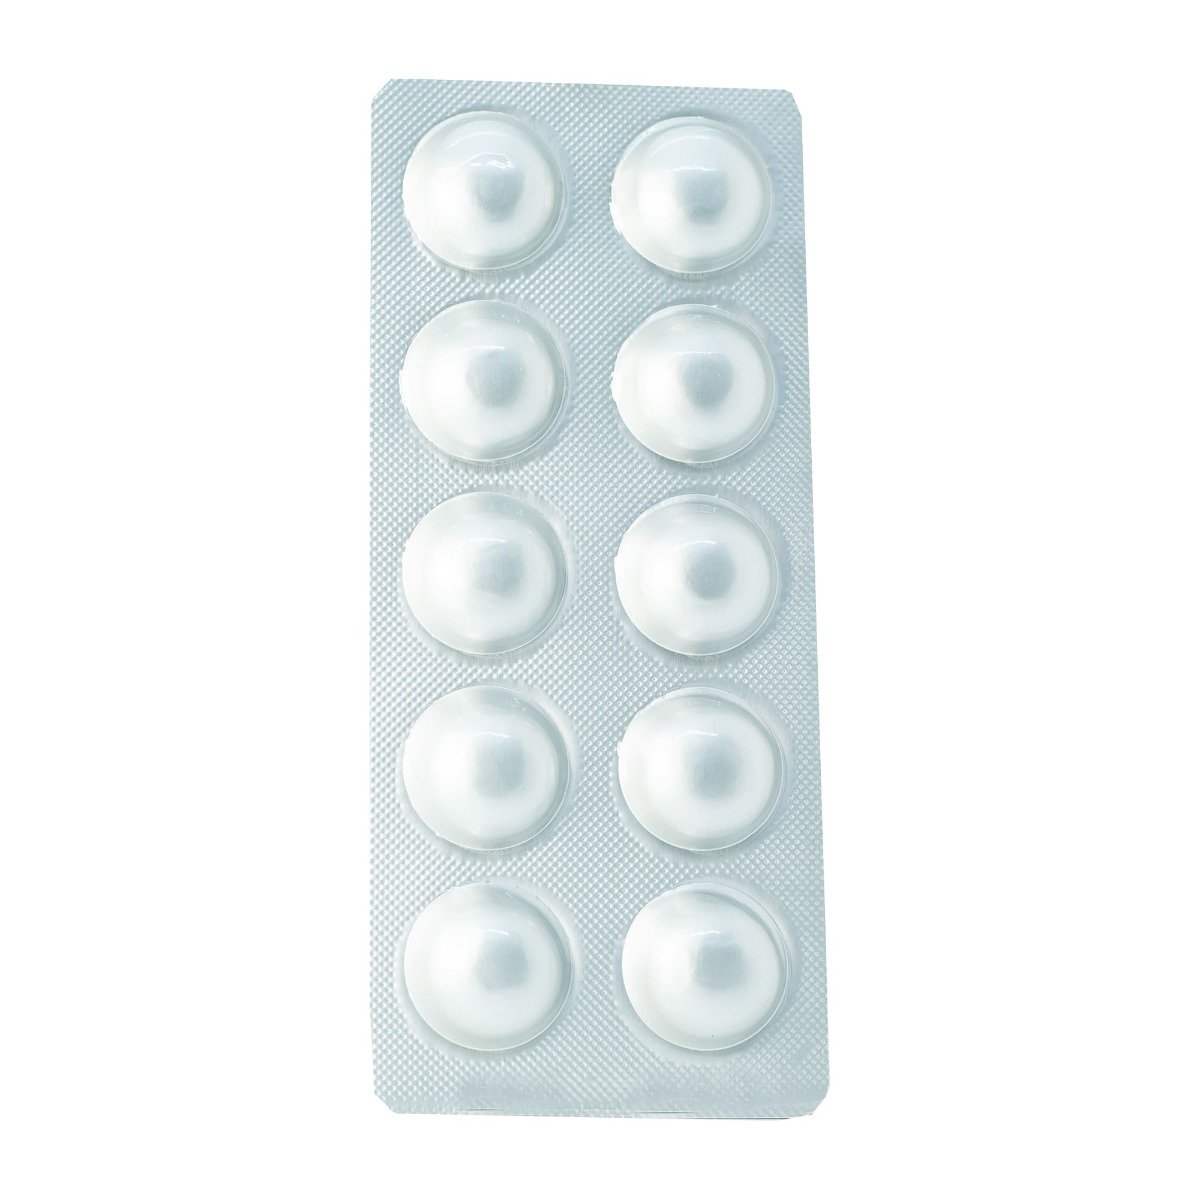 Depakine 200 mg - 40 Tablets - Bloom Pharmacy